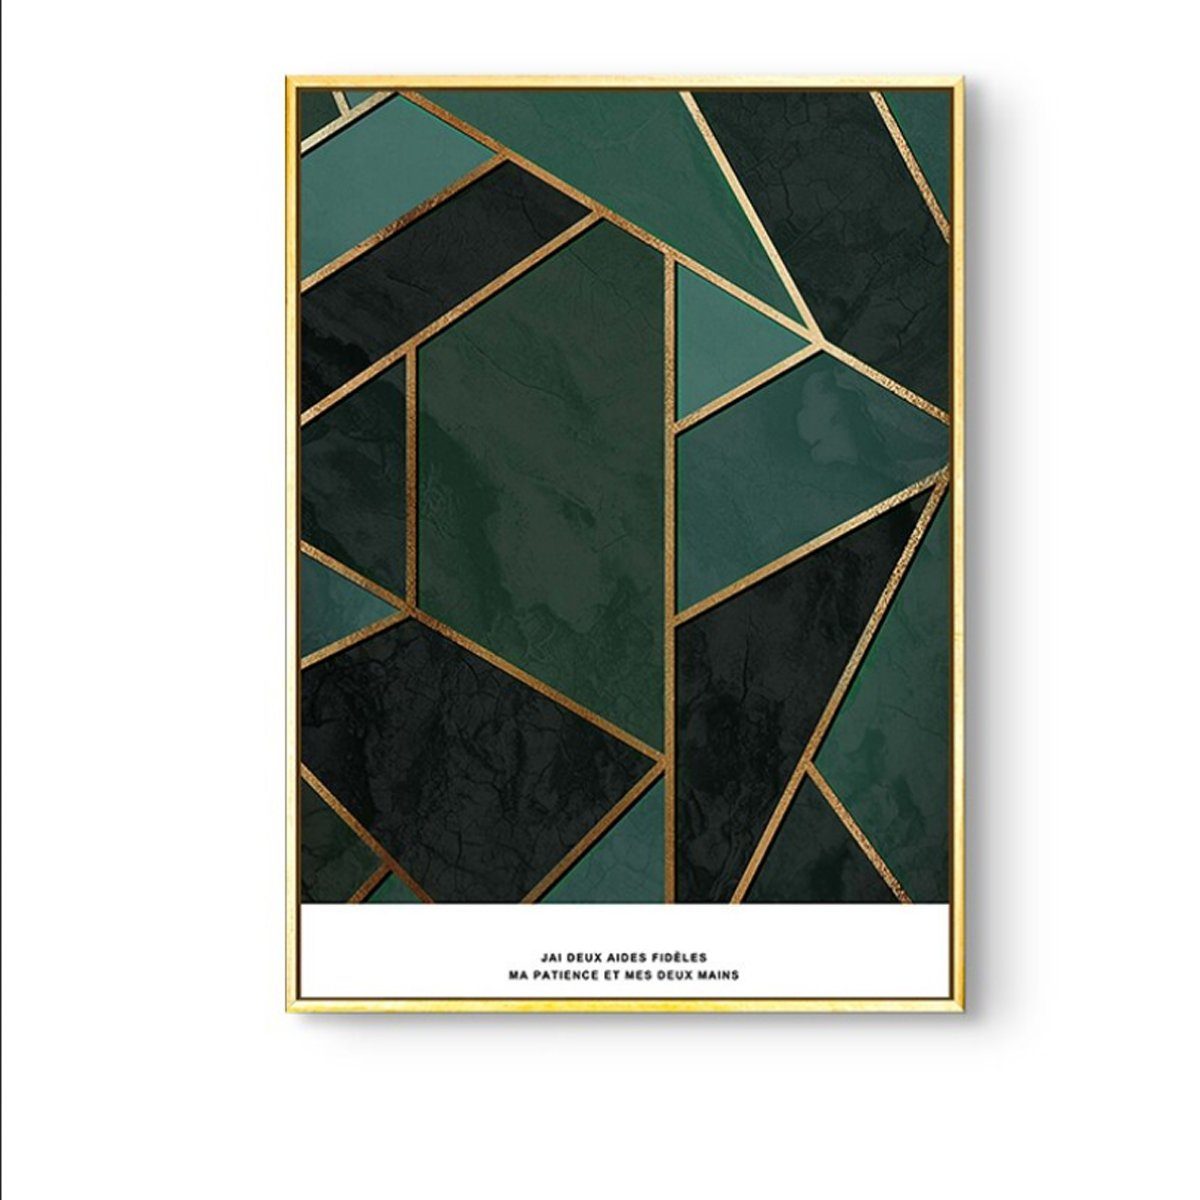 TPFLiving Kunstdruck (OHNE RAHMEN) Poster - Leinwand - Wandbild, Nordic Art - Abstrakte Formen - Bilder Wohnzimmer - (4 Motive in 7 verschiedenen Größen zur Auswahl), Farben: gold, grün, schwarz und weiß - Größe: 21x30cm